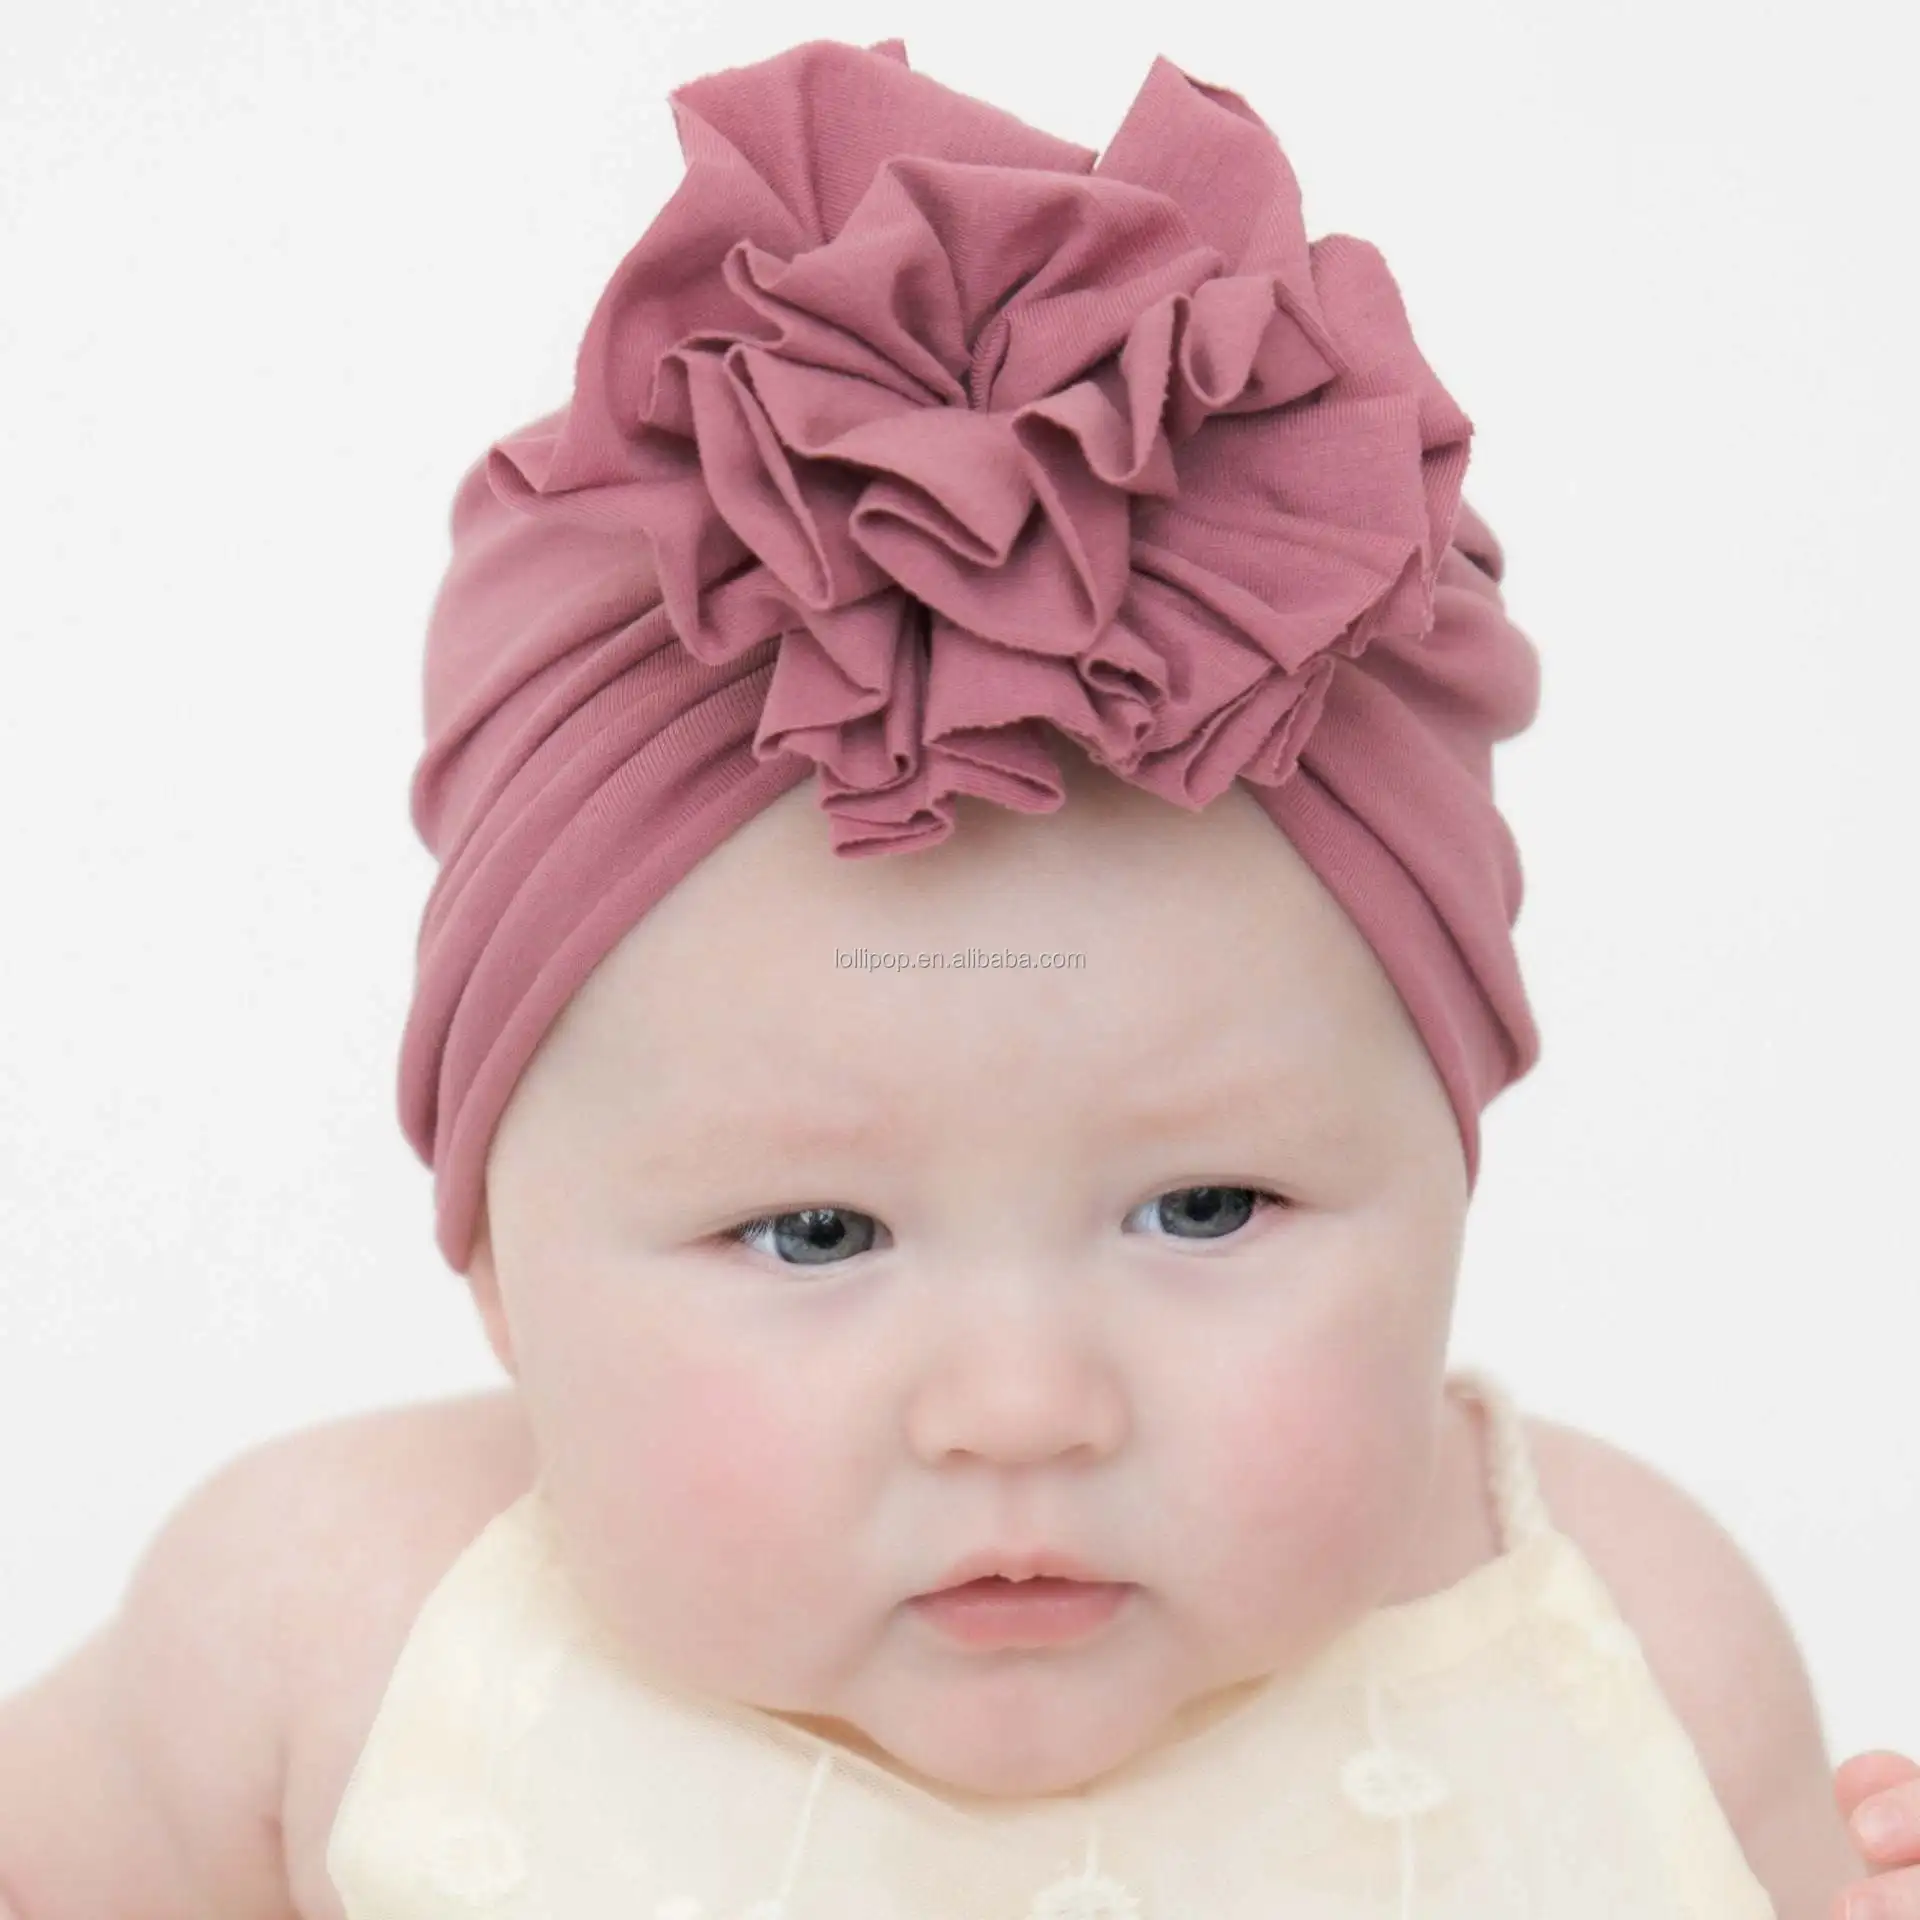 Turbante infantil /turbante bebé / sombrero de turbante de niña bebé /  turbante rosa / sombrero rosa polvoriento / Turbante / sombrero de turbante  bebé moderno / turbante rosa Rosa polvoriento -  México